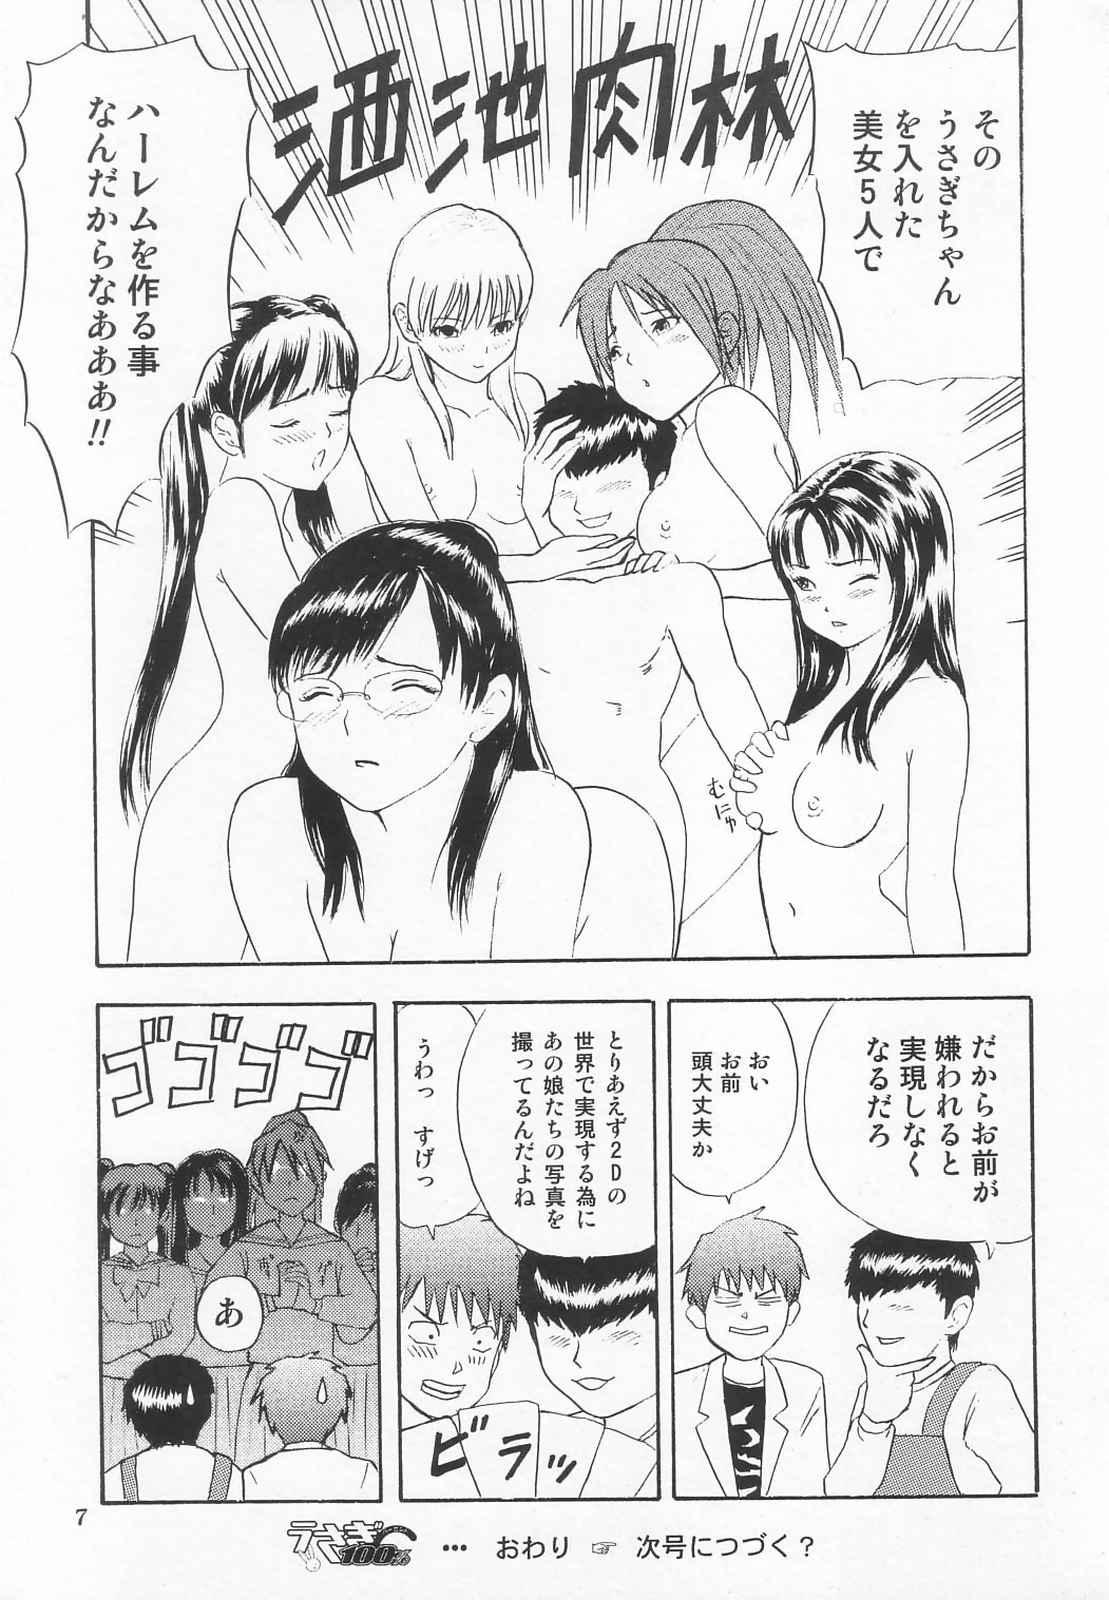 Black Thugs Tokusatsu Magazine x 2003 Fuyu Gou - Sailor moon Ichigo 100 Secret - Page 9